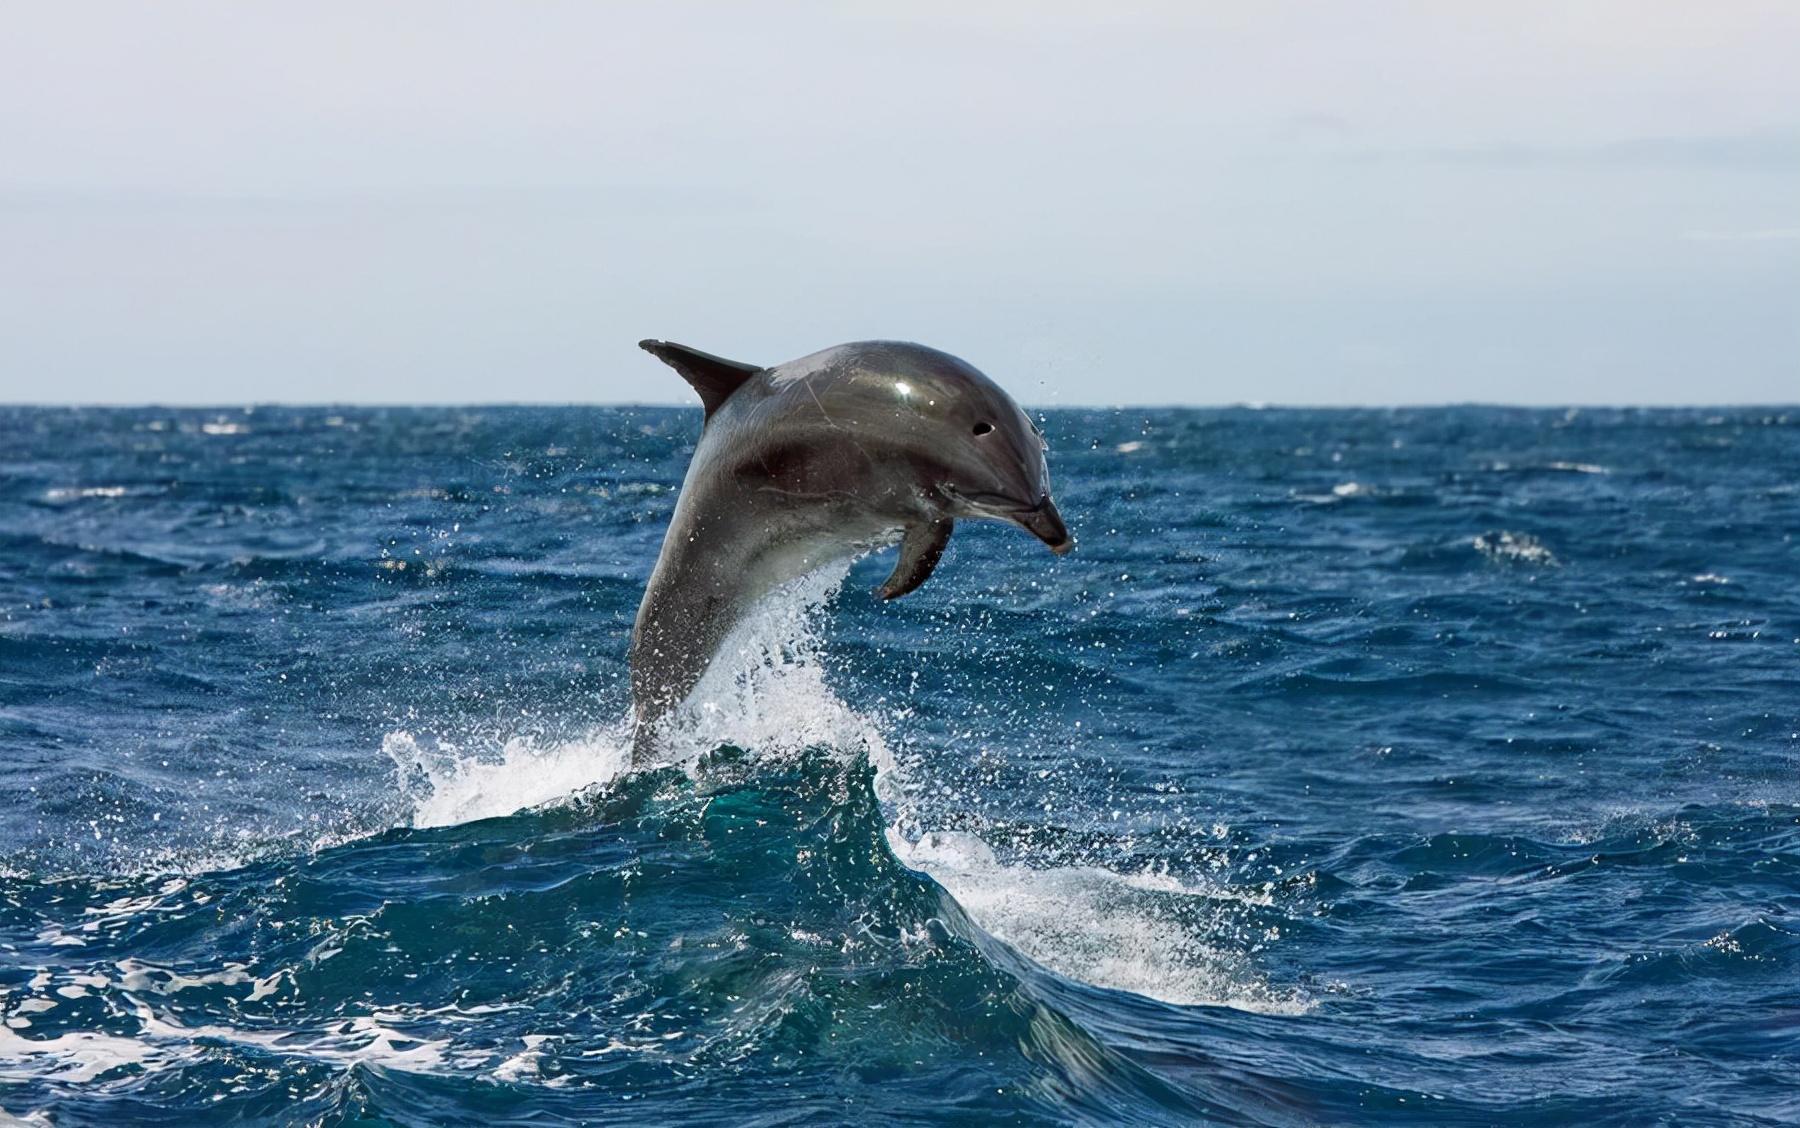 海豚写真_动物_太平洋科技